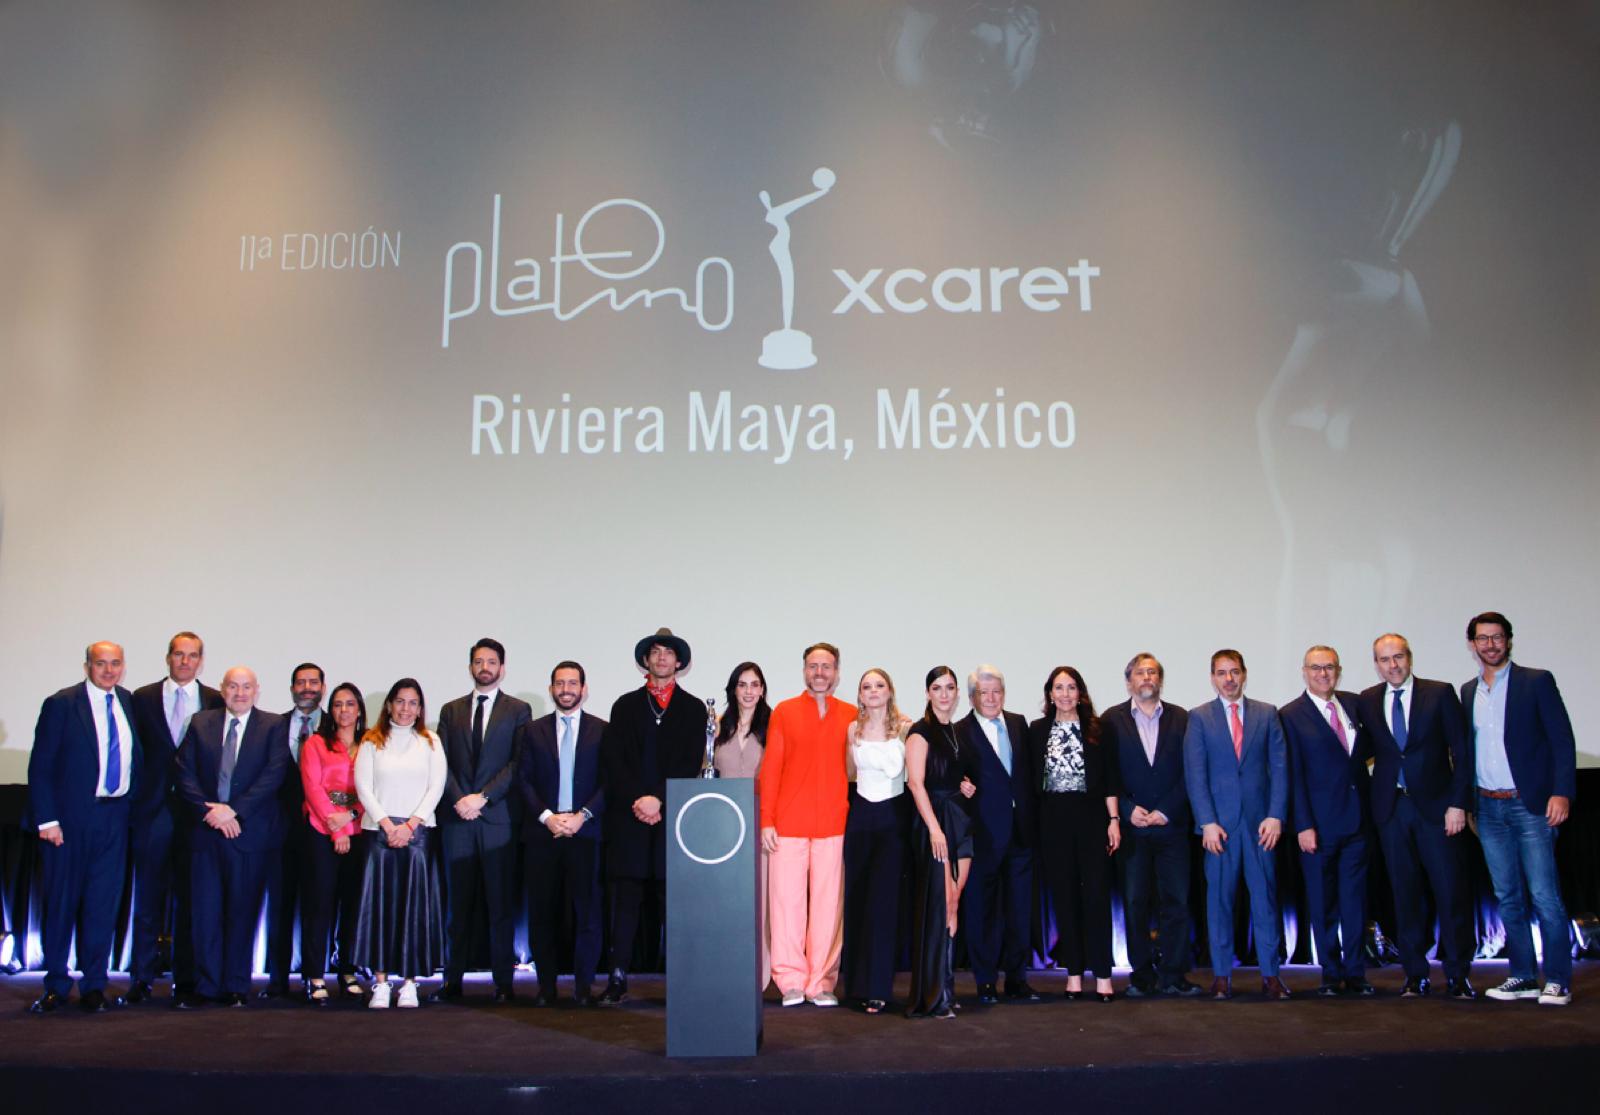 Huesera encabeza por parte de México la lista de 20 títulos por categoría previa a las finalistas de los XI Premios Platino Xcaret